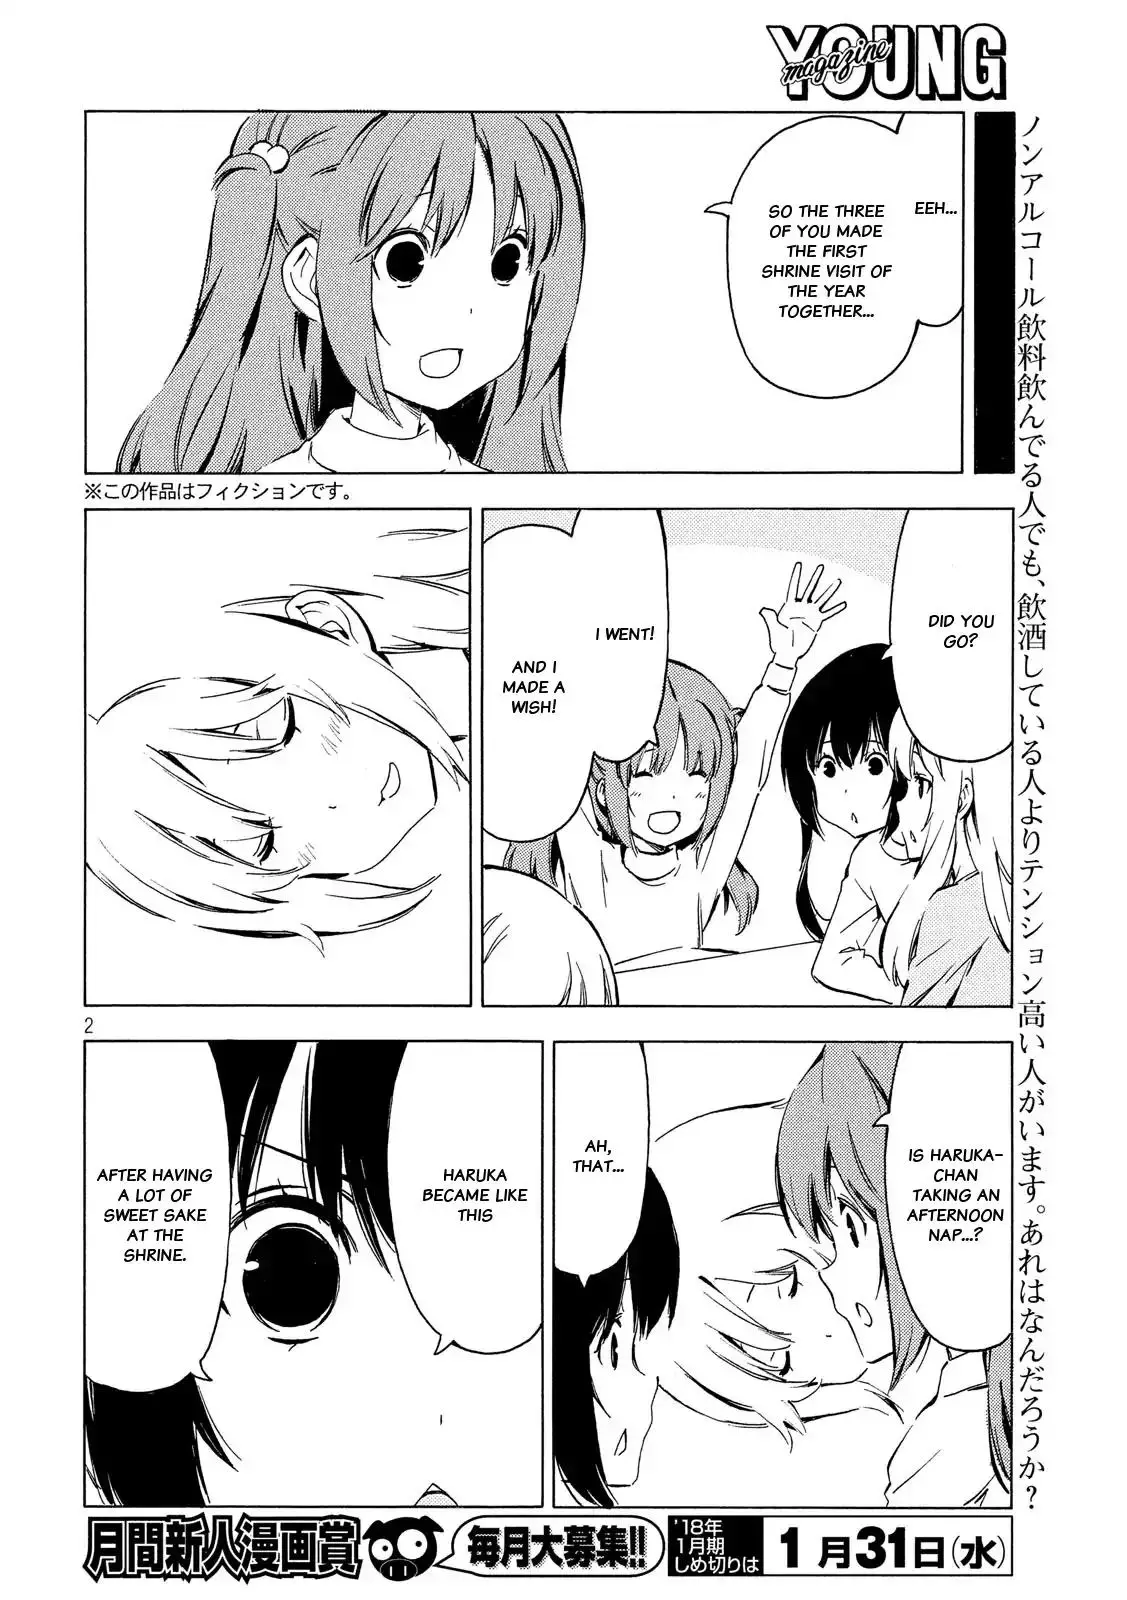 Minami-ke - 332 page 1